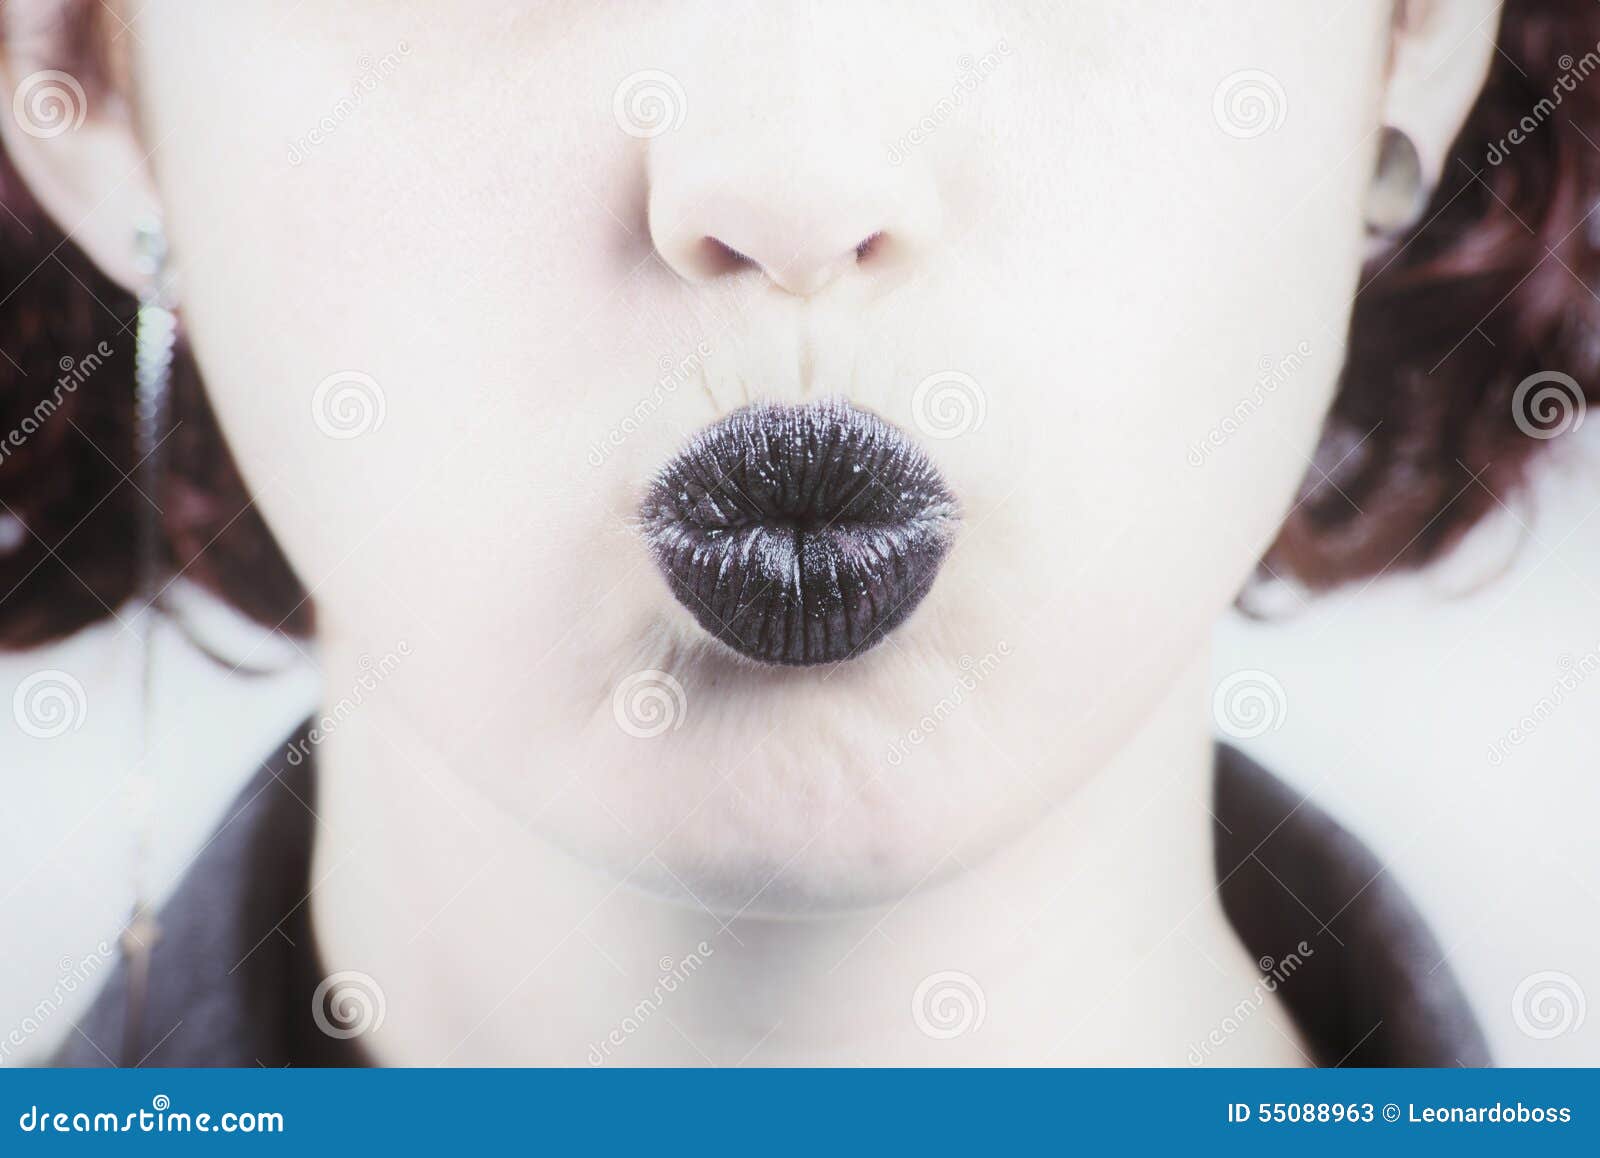 Черные губы